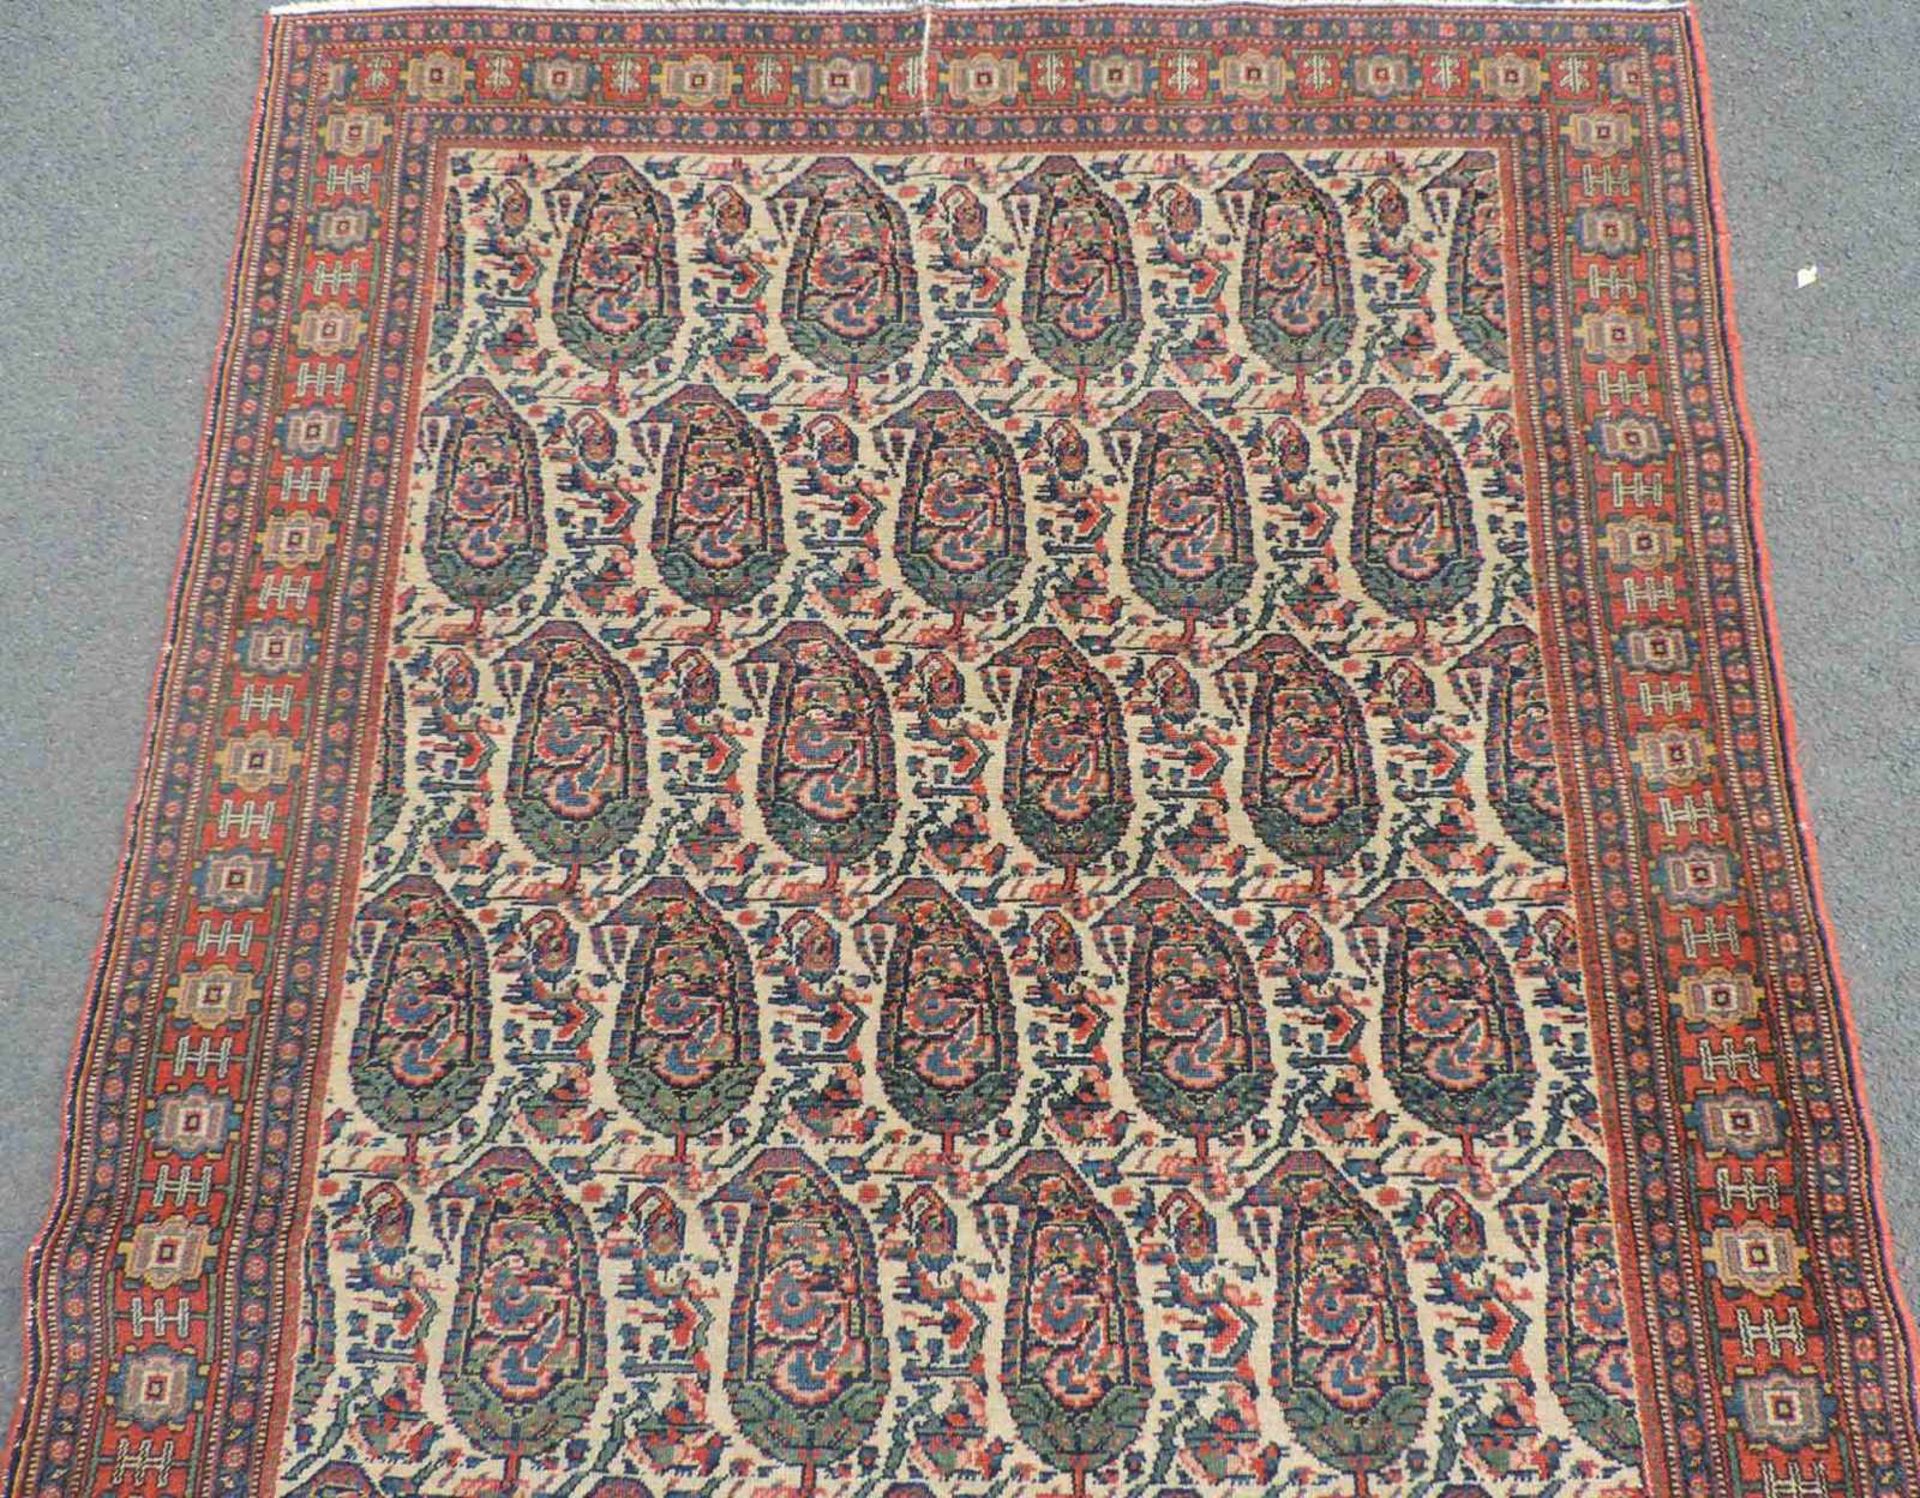 Senneh Dorfteppich. Iran. Antik. Um 1900. 196 cm x 136 cm. Handgeknüpft. Wolle auf Baumwolle. Senneh - Bild 3 aus 5